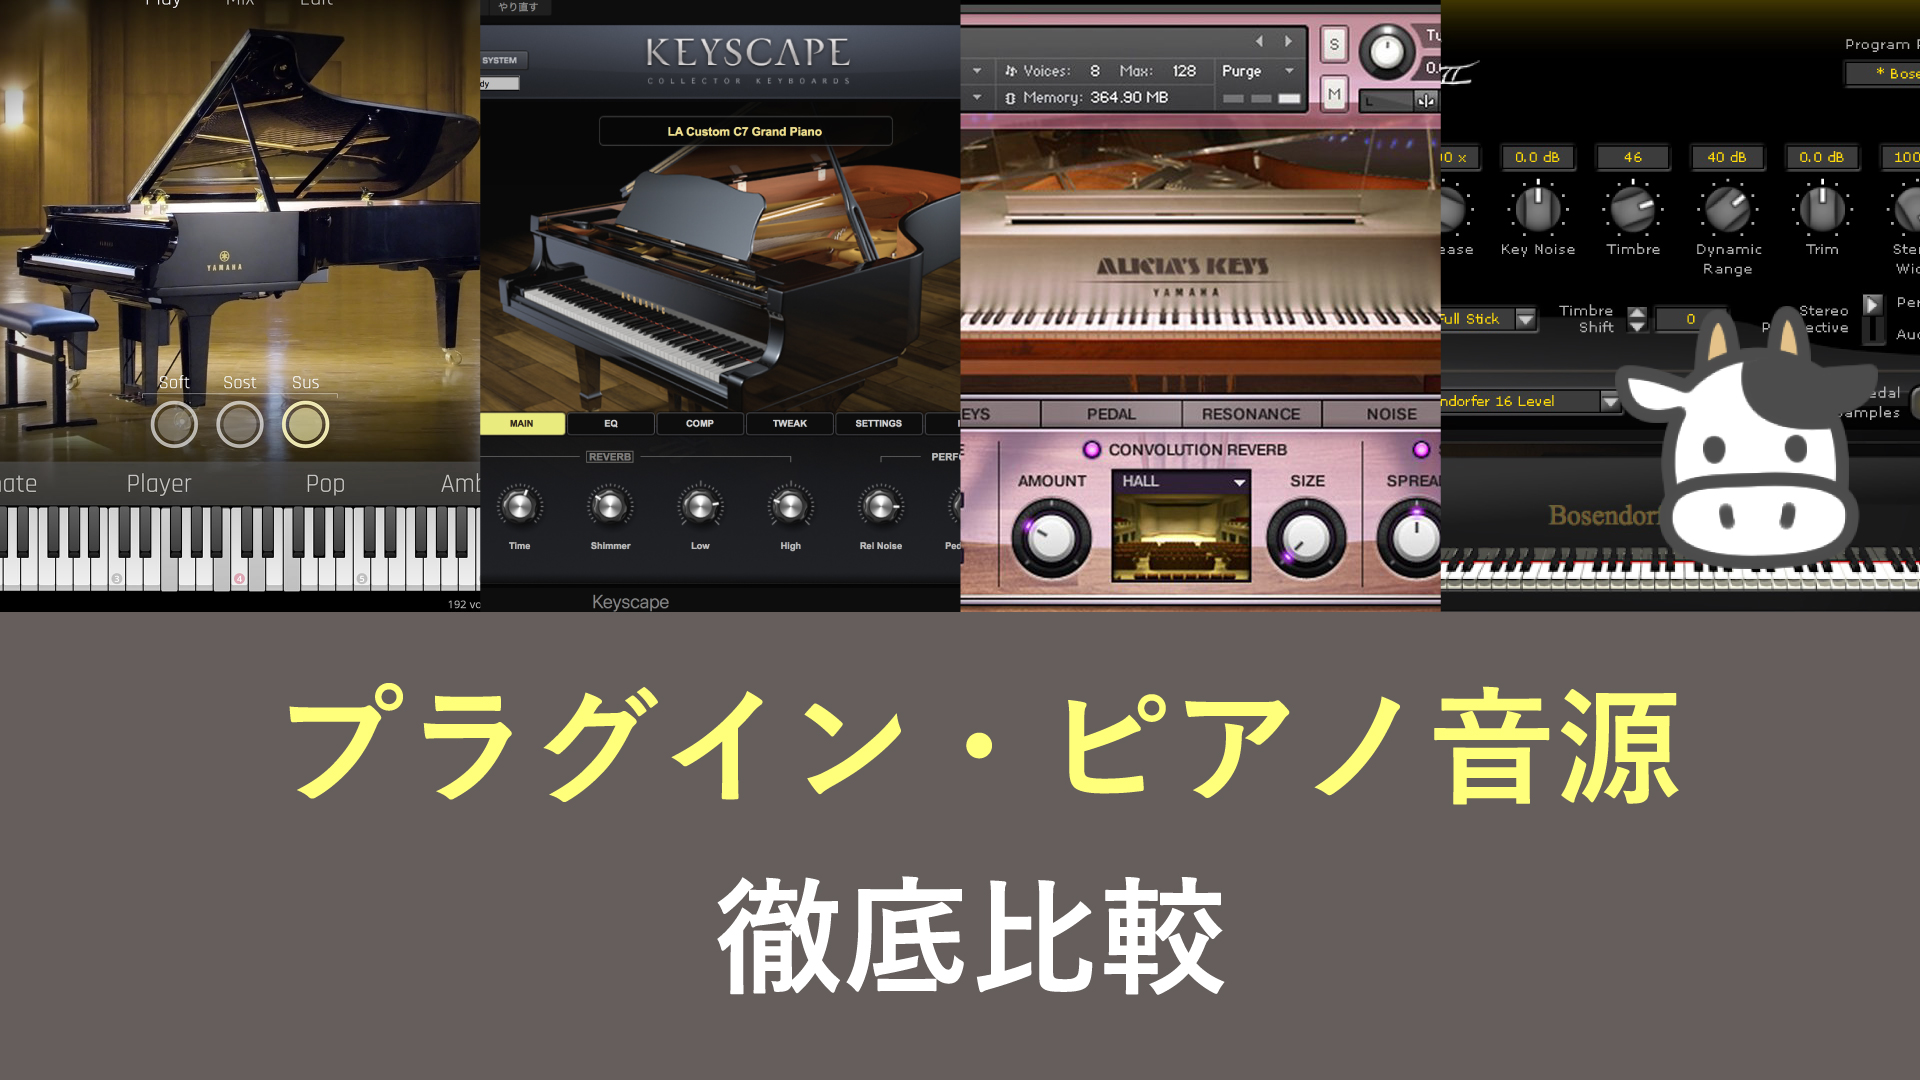 Cfx Ivory Ii Keyscape Qlp 4つのピアノ音源 他も を徹底比較 2020 岩崎将史のブログ